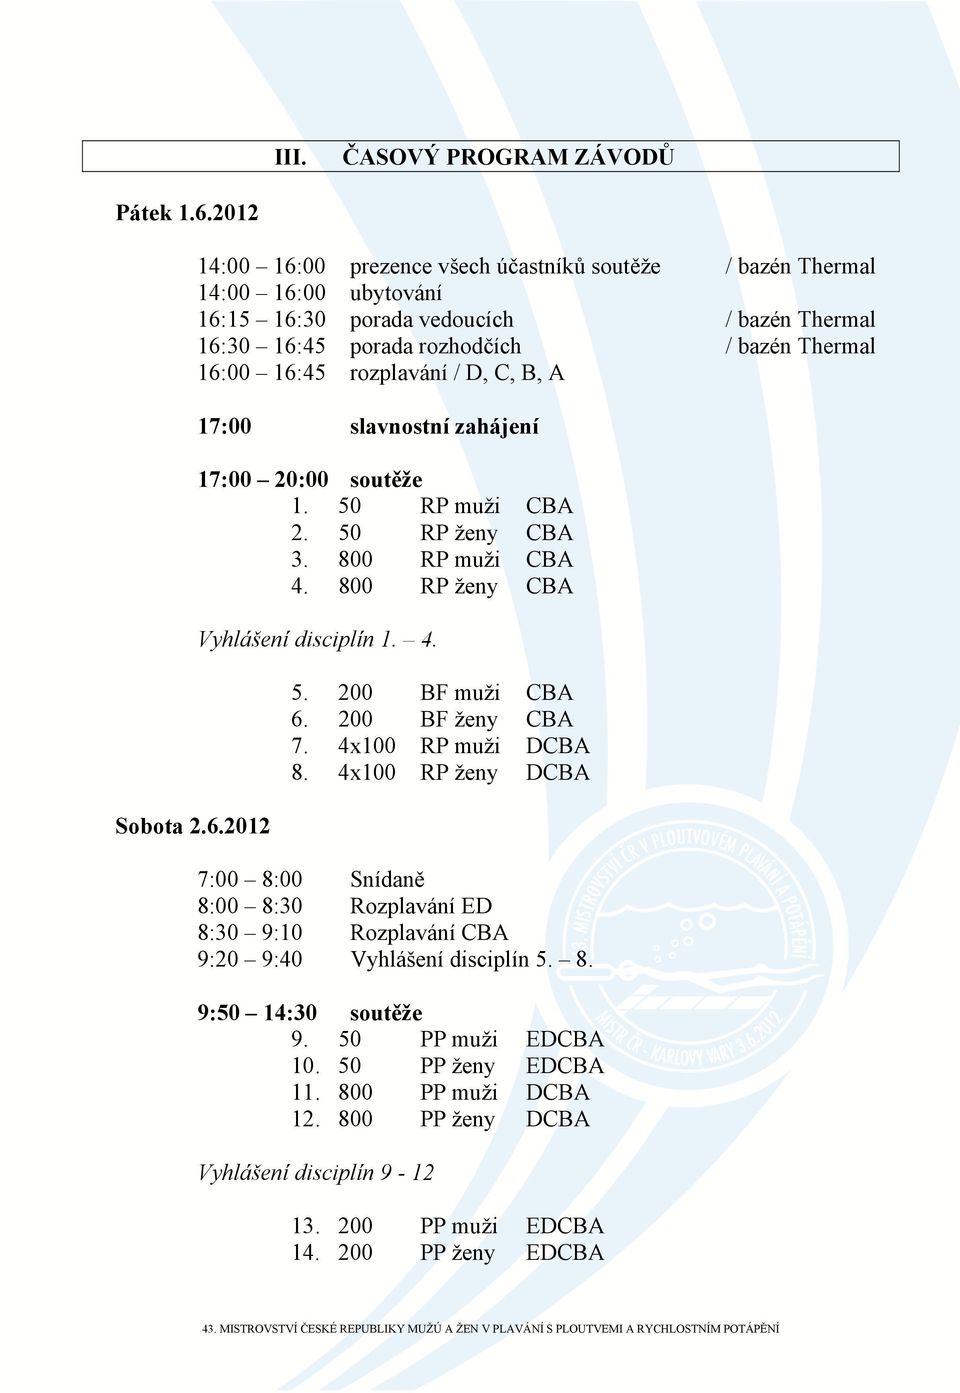 2012 14:00 16:00 prezence všech účastníků soutěže / bazén Thermal 14:00 16:00 ubytování 16:15 16:30 porada vedoucích / bazén Thermal 16:30 16:45 porada rozhodčích / bazén Thermal 16:00 16:45